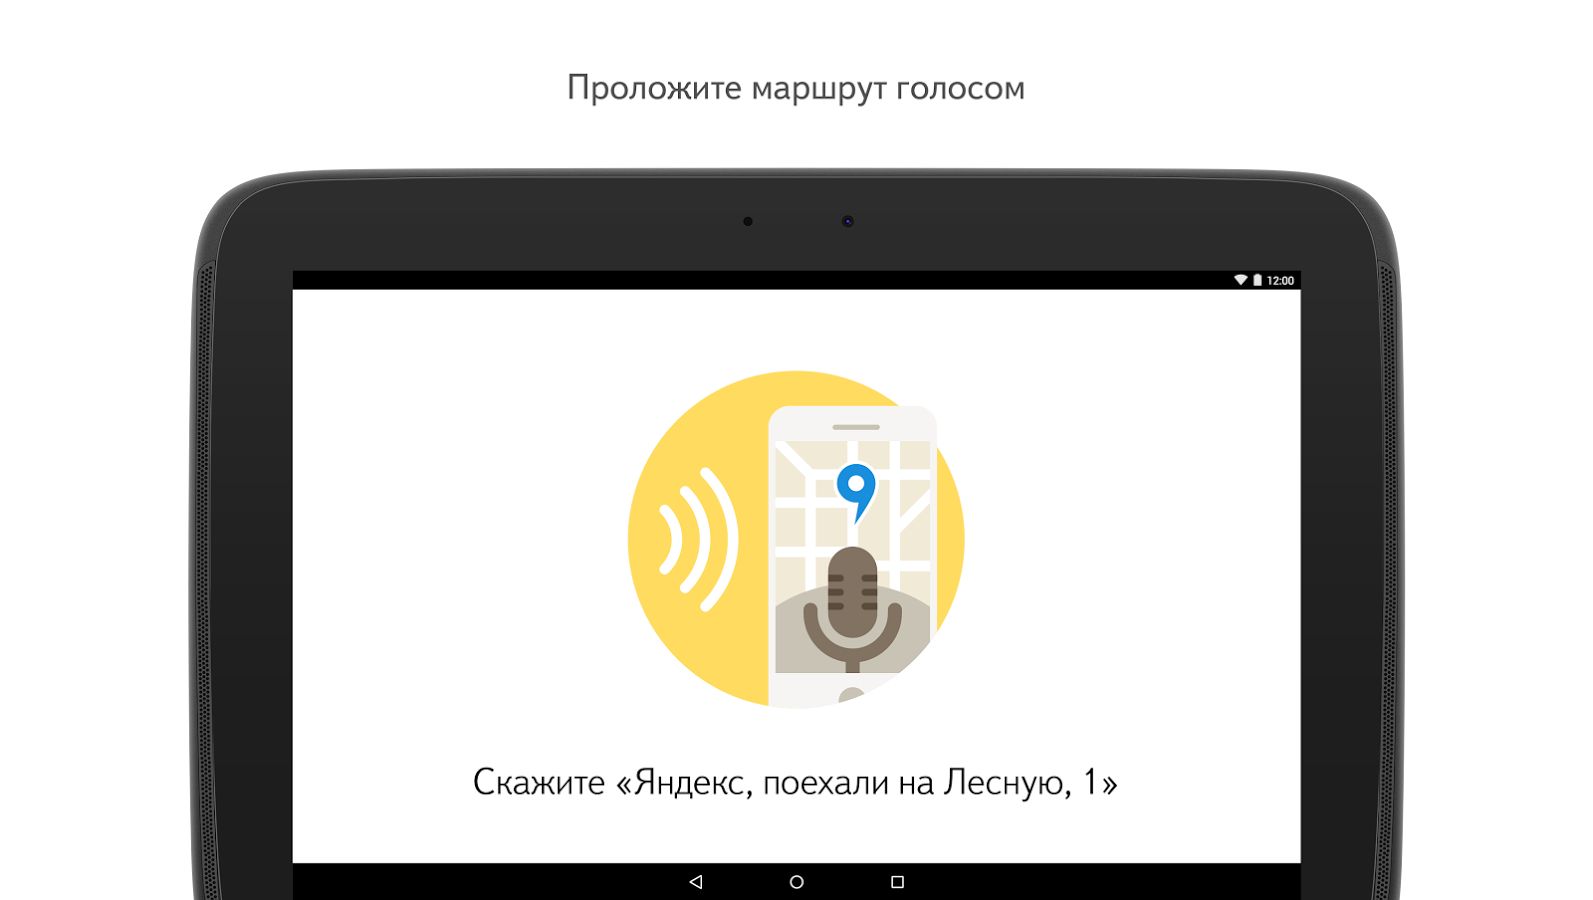 Навигатор Яндекс голосовой